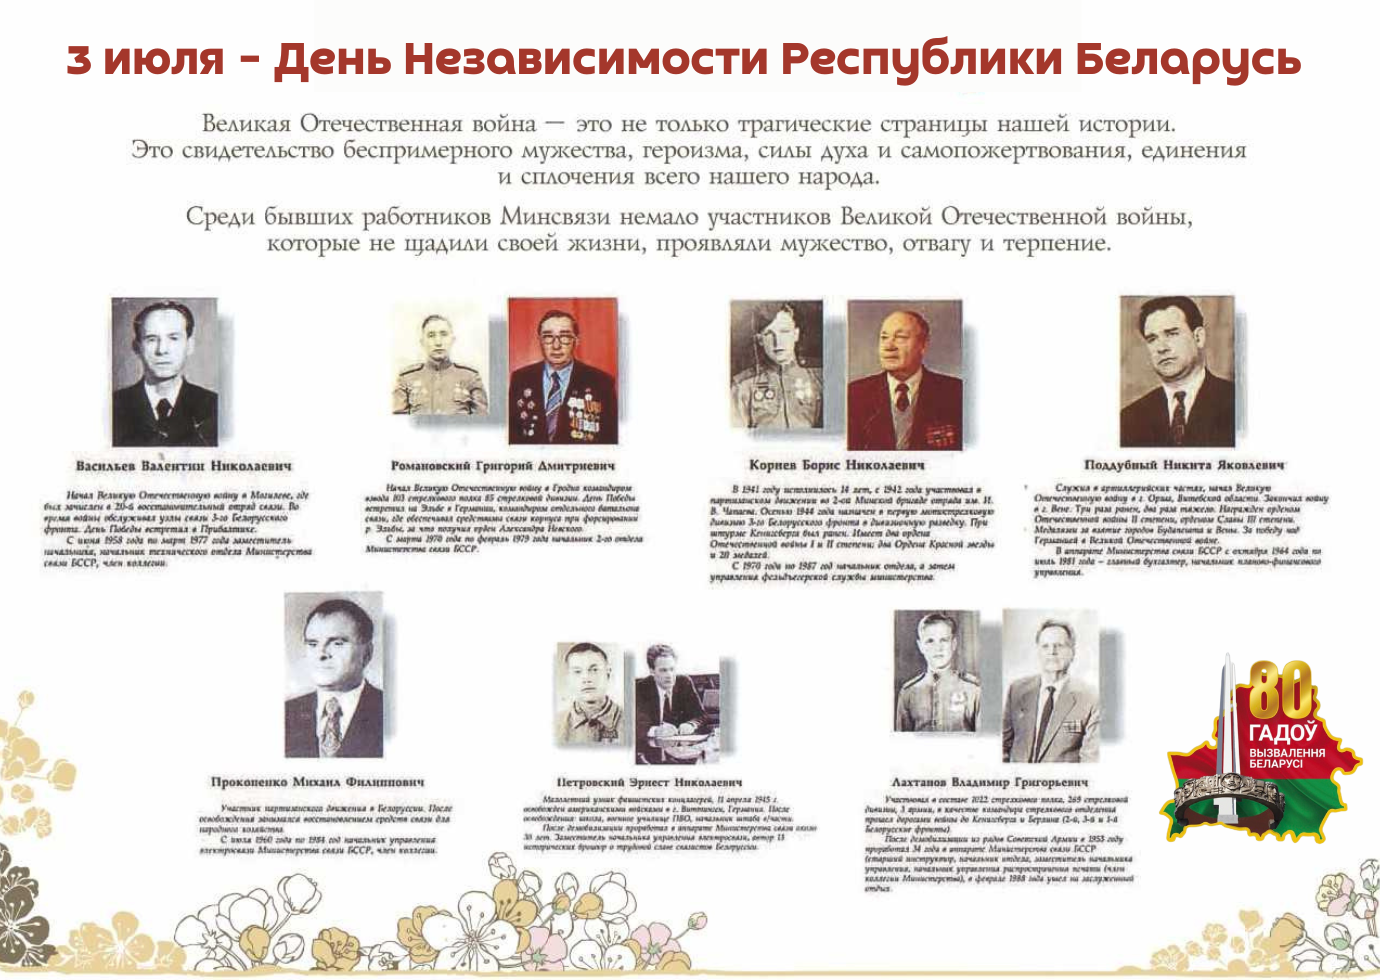 Участники Великой Отечественной войны,  бывшие сотрудники Минсвязи